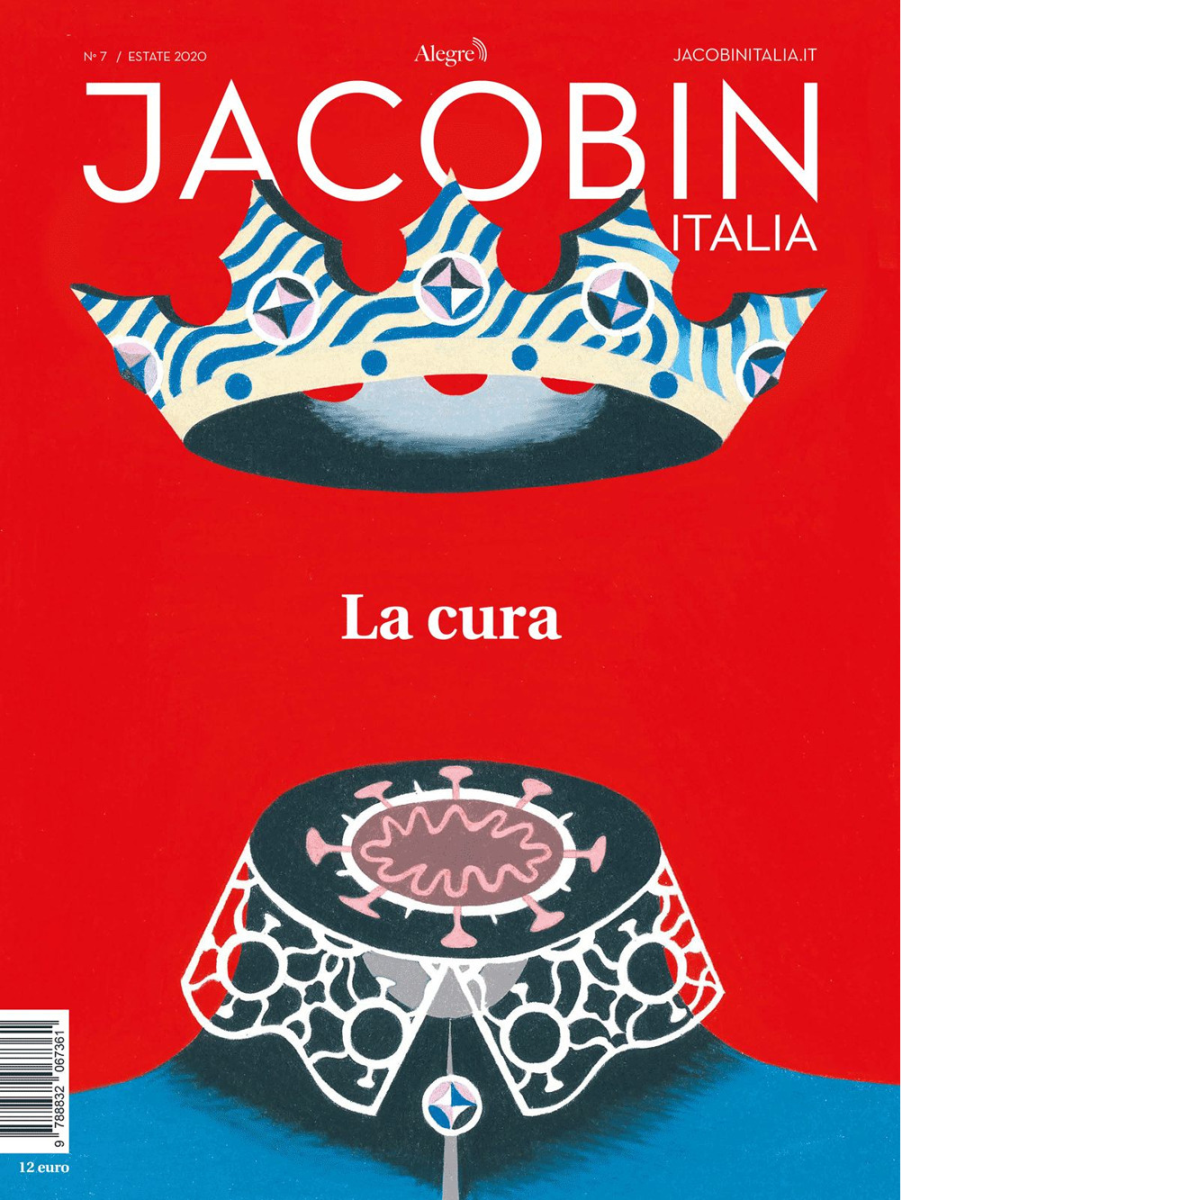 JACOBIN ITALIA - 7 - aa.vv. - edizioni alegre, 2020